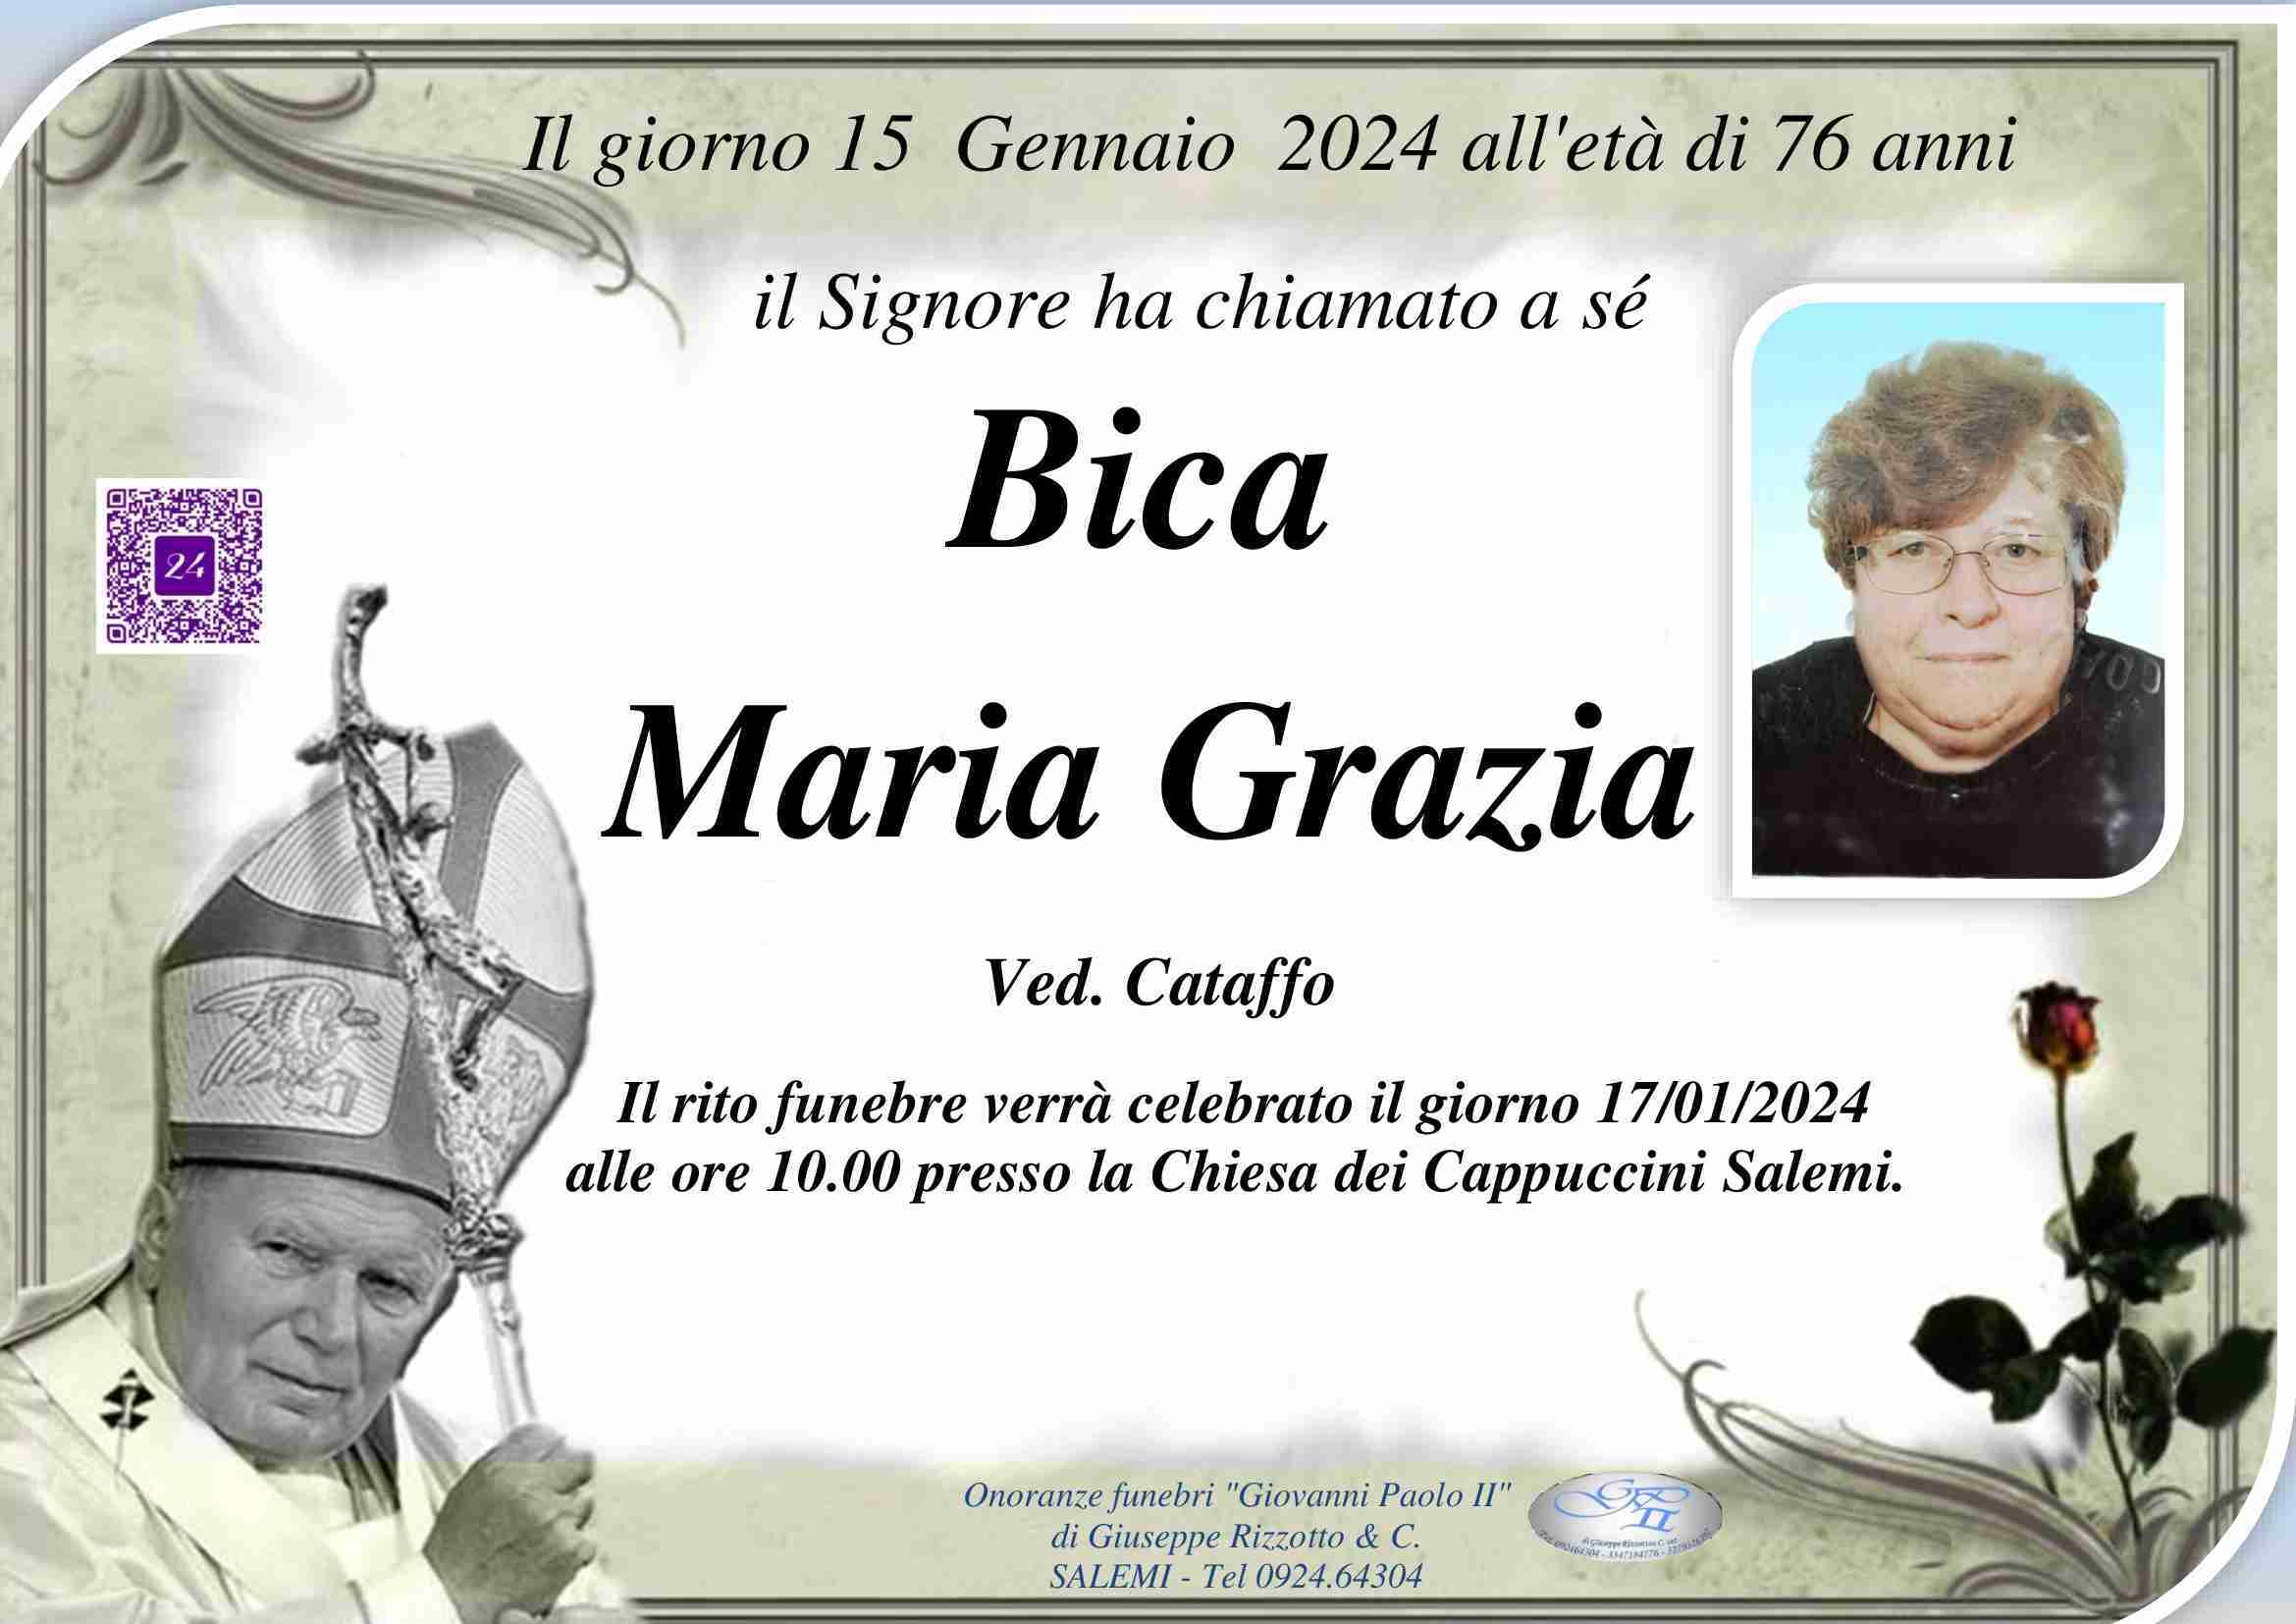 Maria Grazia Bica